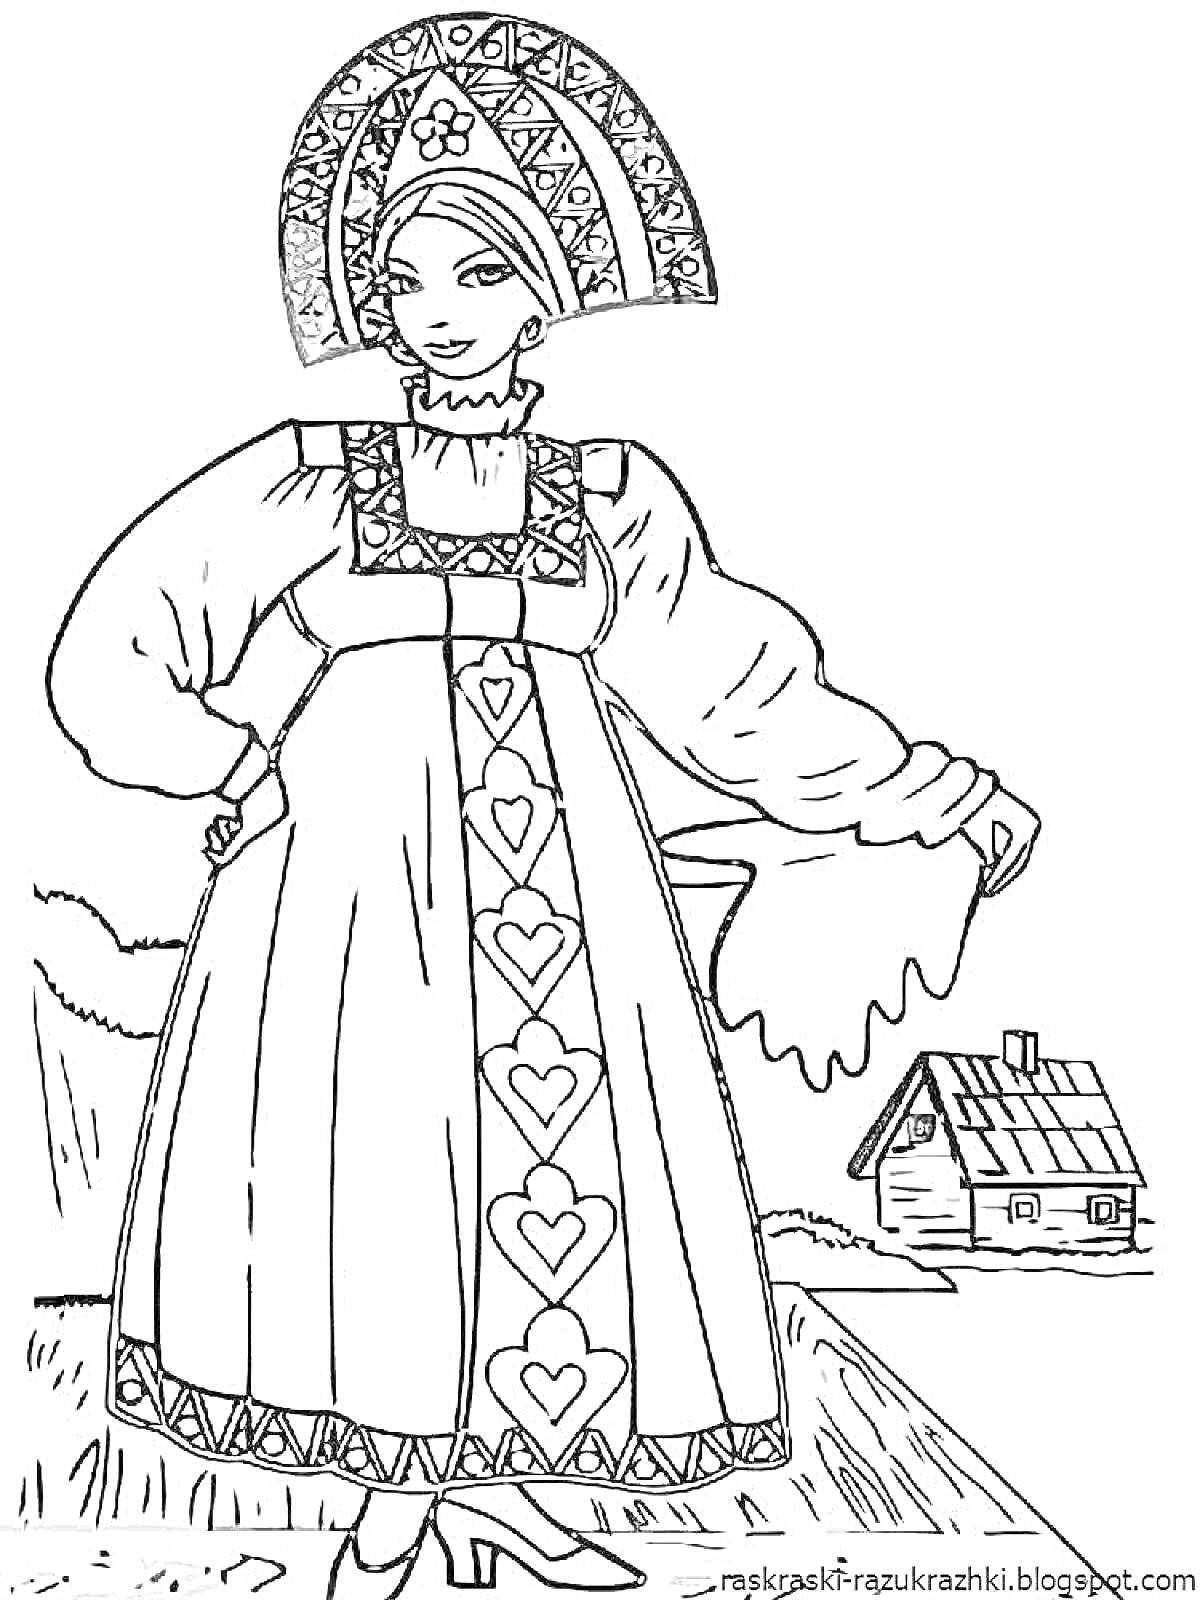 Девушка в русском народном костюме с кокошником, сарафаном с узором из сердец и рубахой с рукавами-фонариками, на фоне деревенского домика.